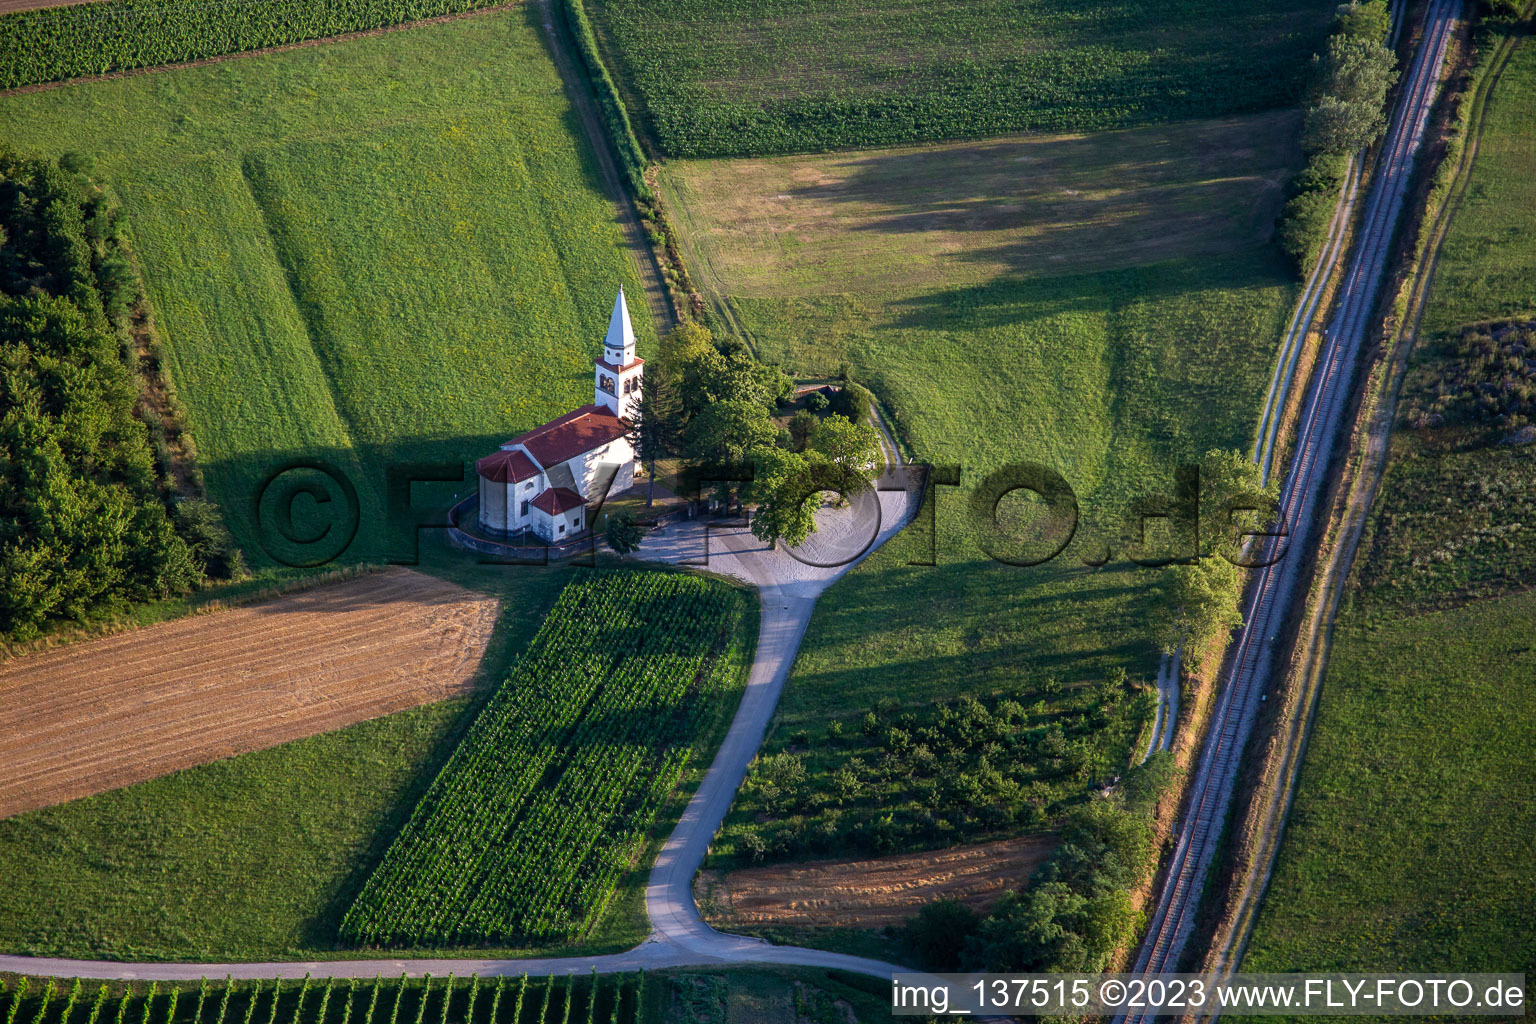 Cerkev sv. Petra im Ortsteil Dobravlje in Ajdovščina, Slowenien